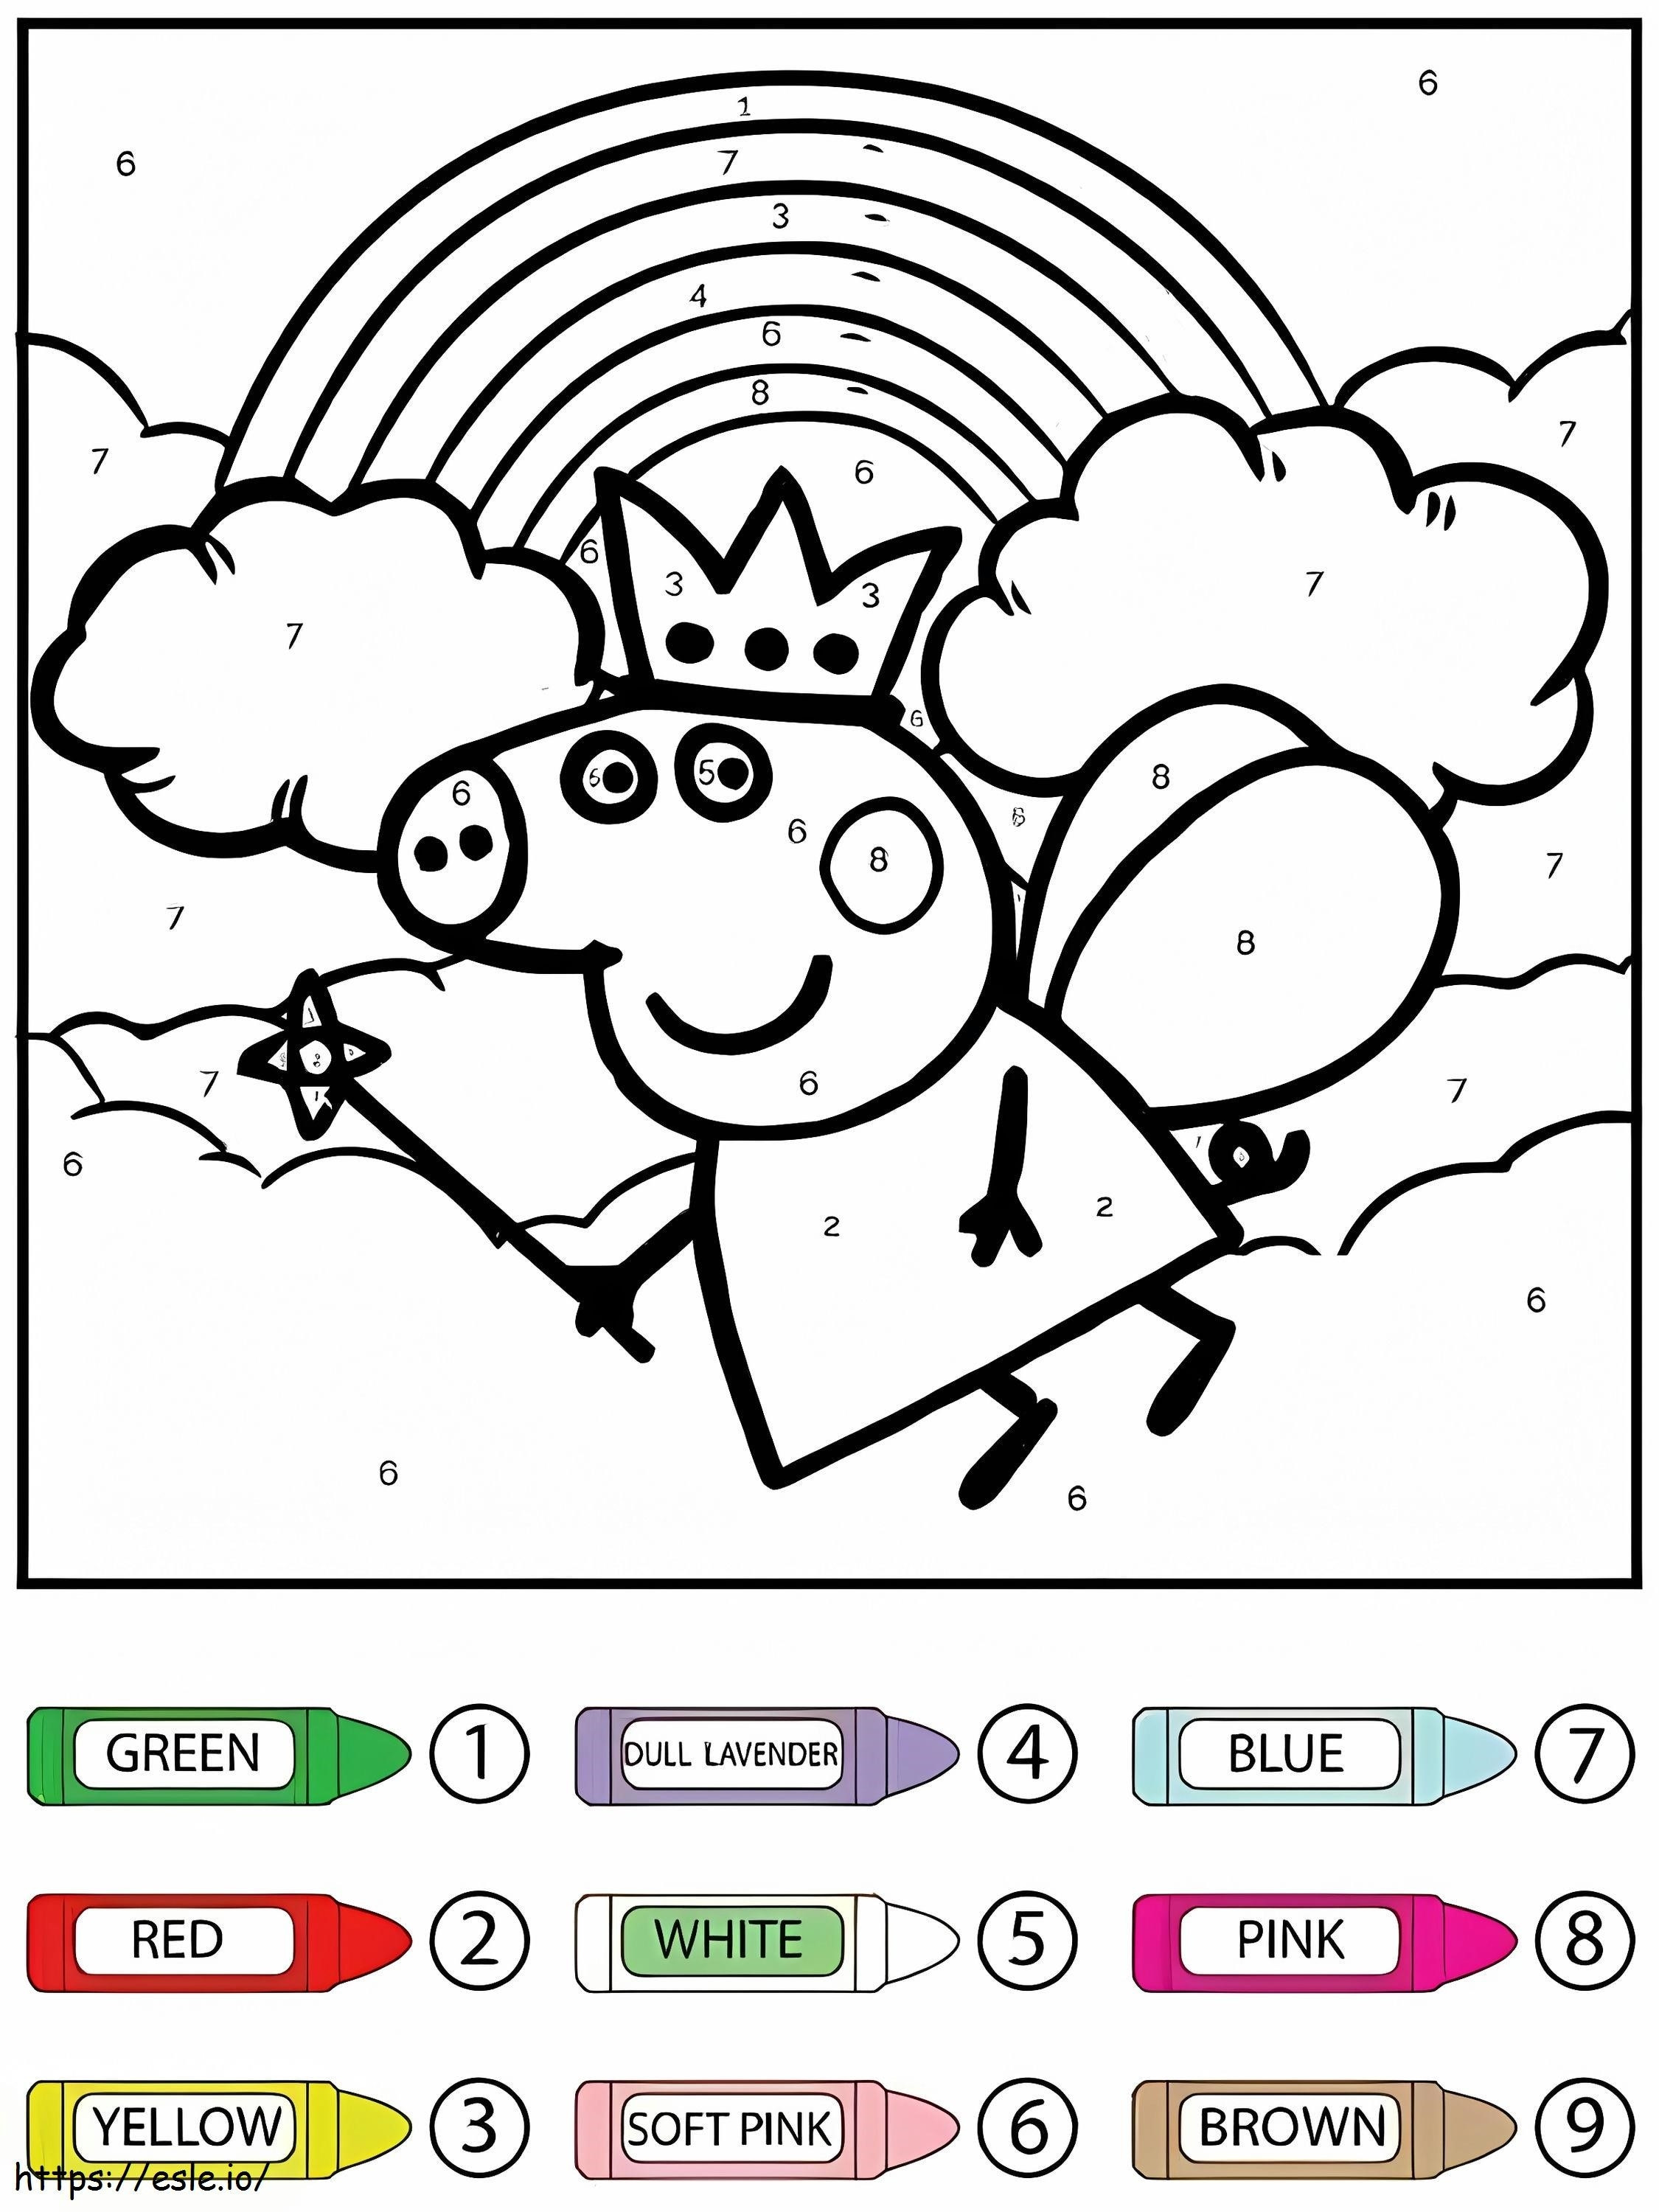 La regina volante Peppa Pig colora per numero da colorare